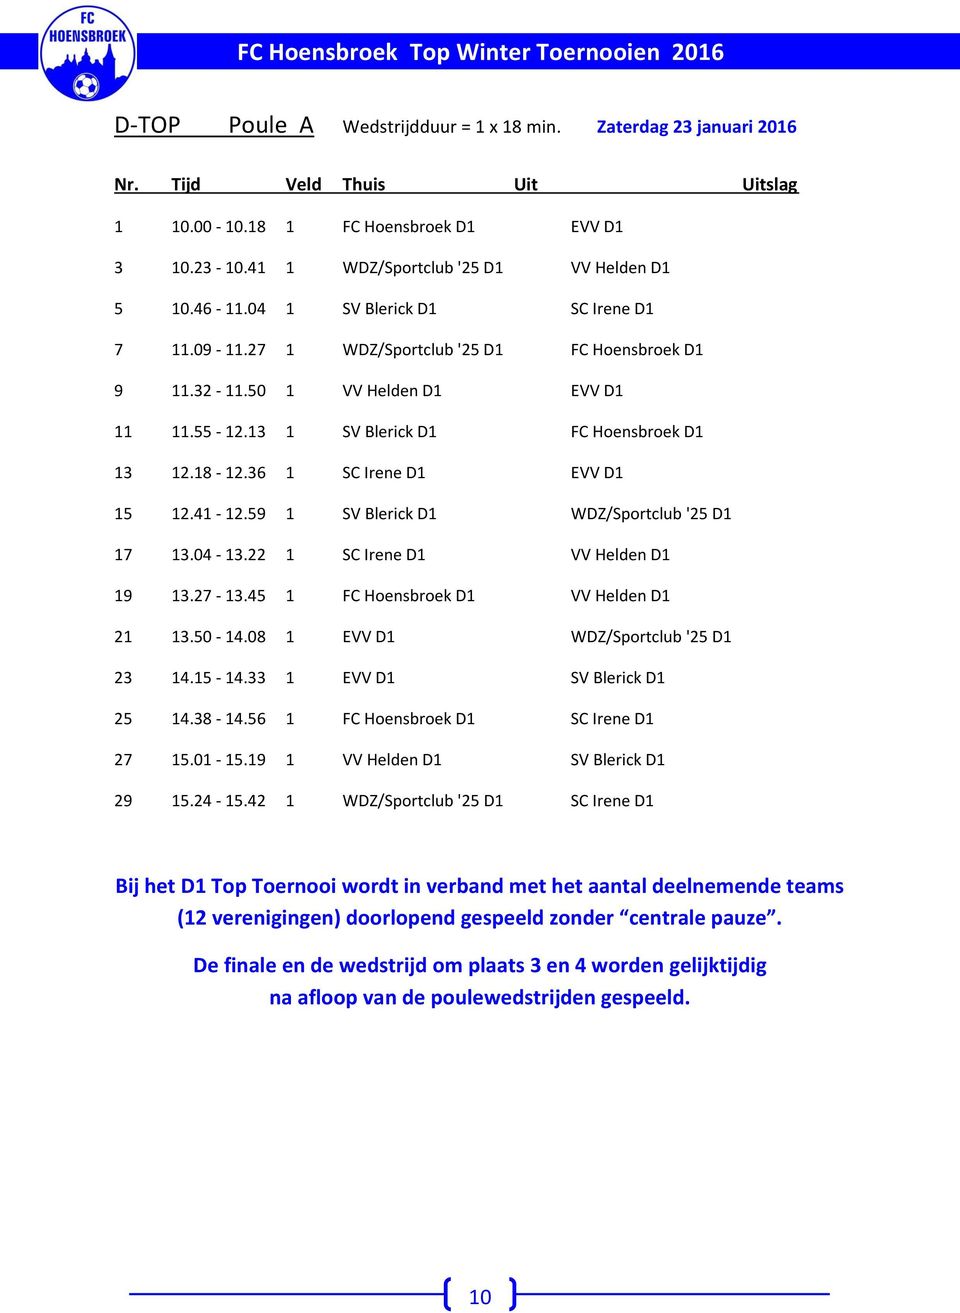 13 1 SV Blerick D1 FC Hoensbroek D1 13 12.18-12.36 1 SC Irene D1 EVV D1 15 12.41-12.59 1 SV Blerick D1 DZ/Sportclub '25 D1 17 13.04-13.22 1 SC Irene D1 VV Helden D1 19 13.27-13.